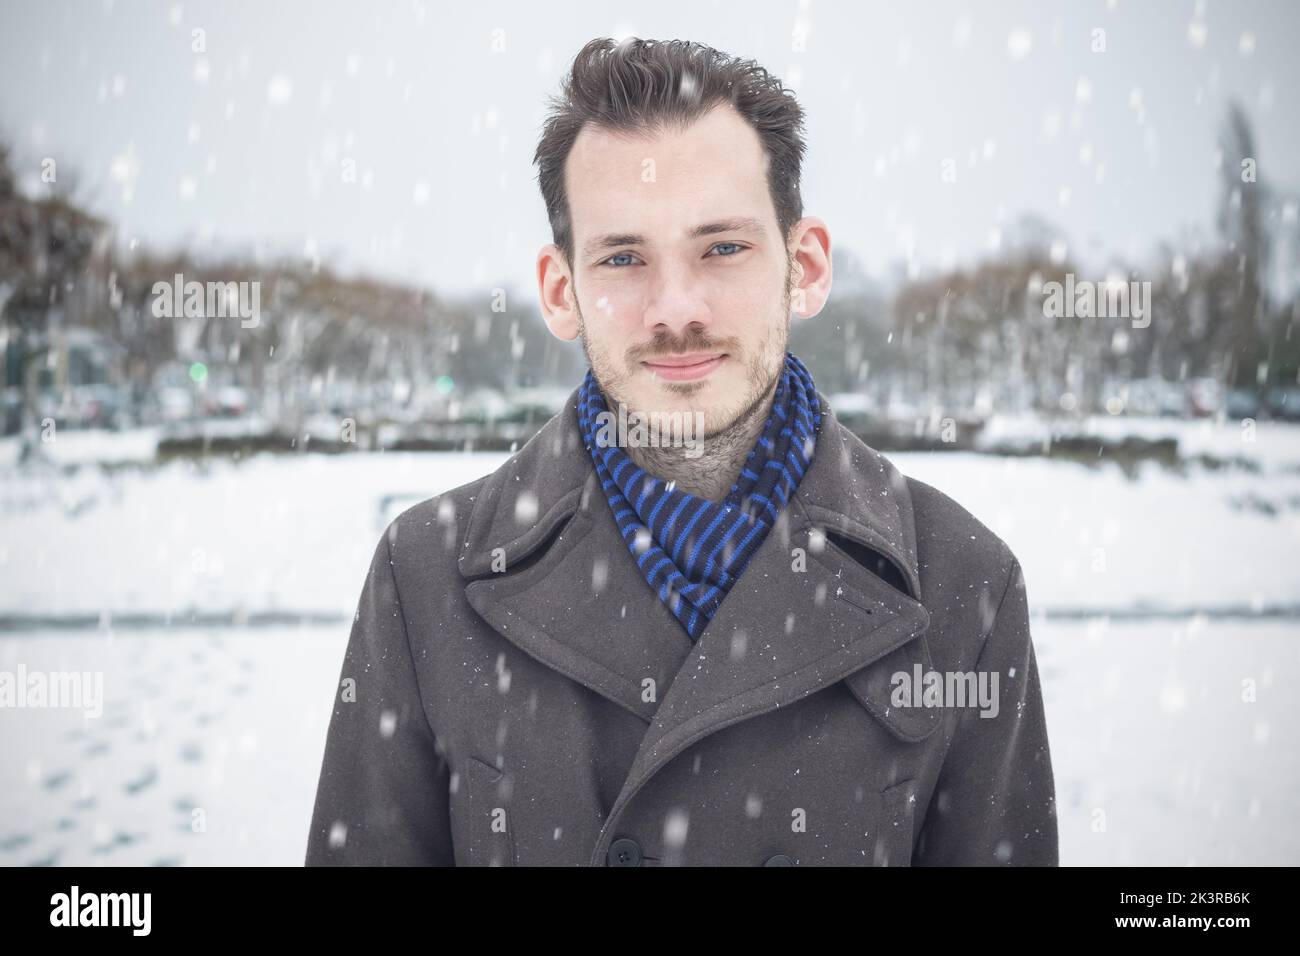 Portrait d'un homme caucasien avec barbe et moustache dans la neige d'hiver Banque D'Images